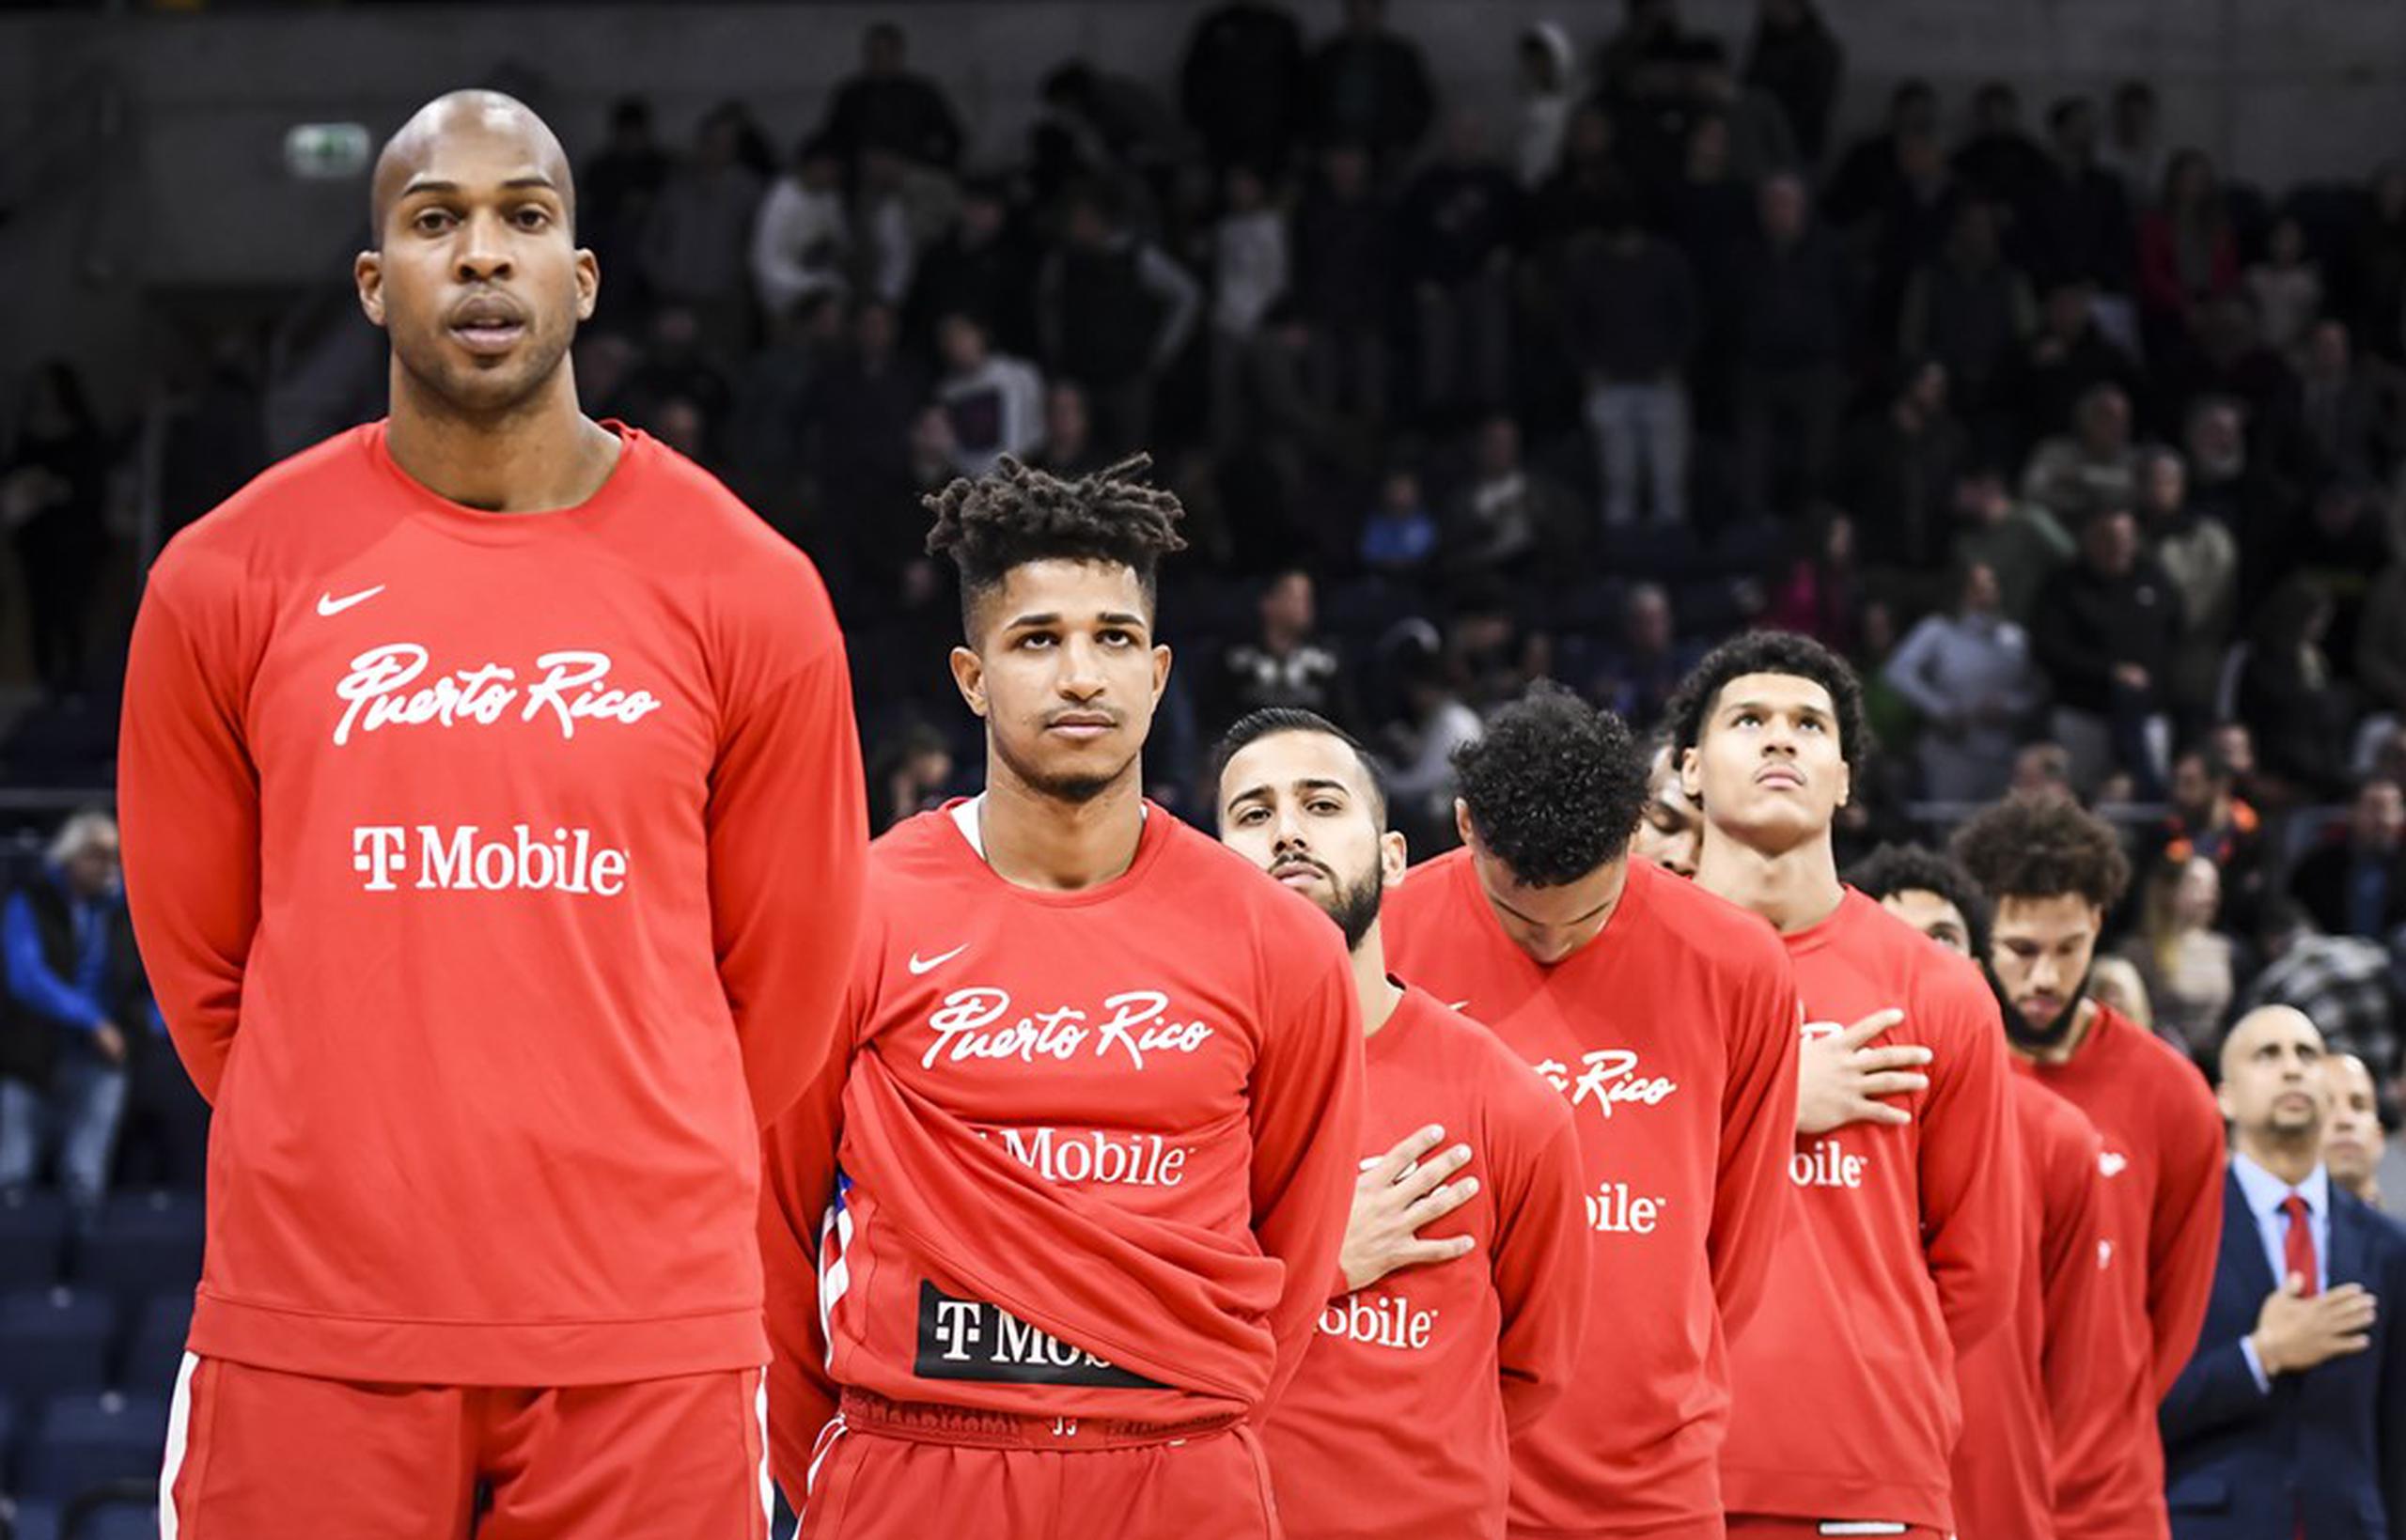 El equipo nacional masculino de baloncesto arranca el sábado su participación en el AmeriCup de Recife, Brasil, con un encuentro ante el seleccionado de República Dominicana.